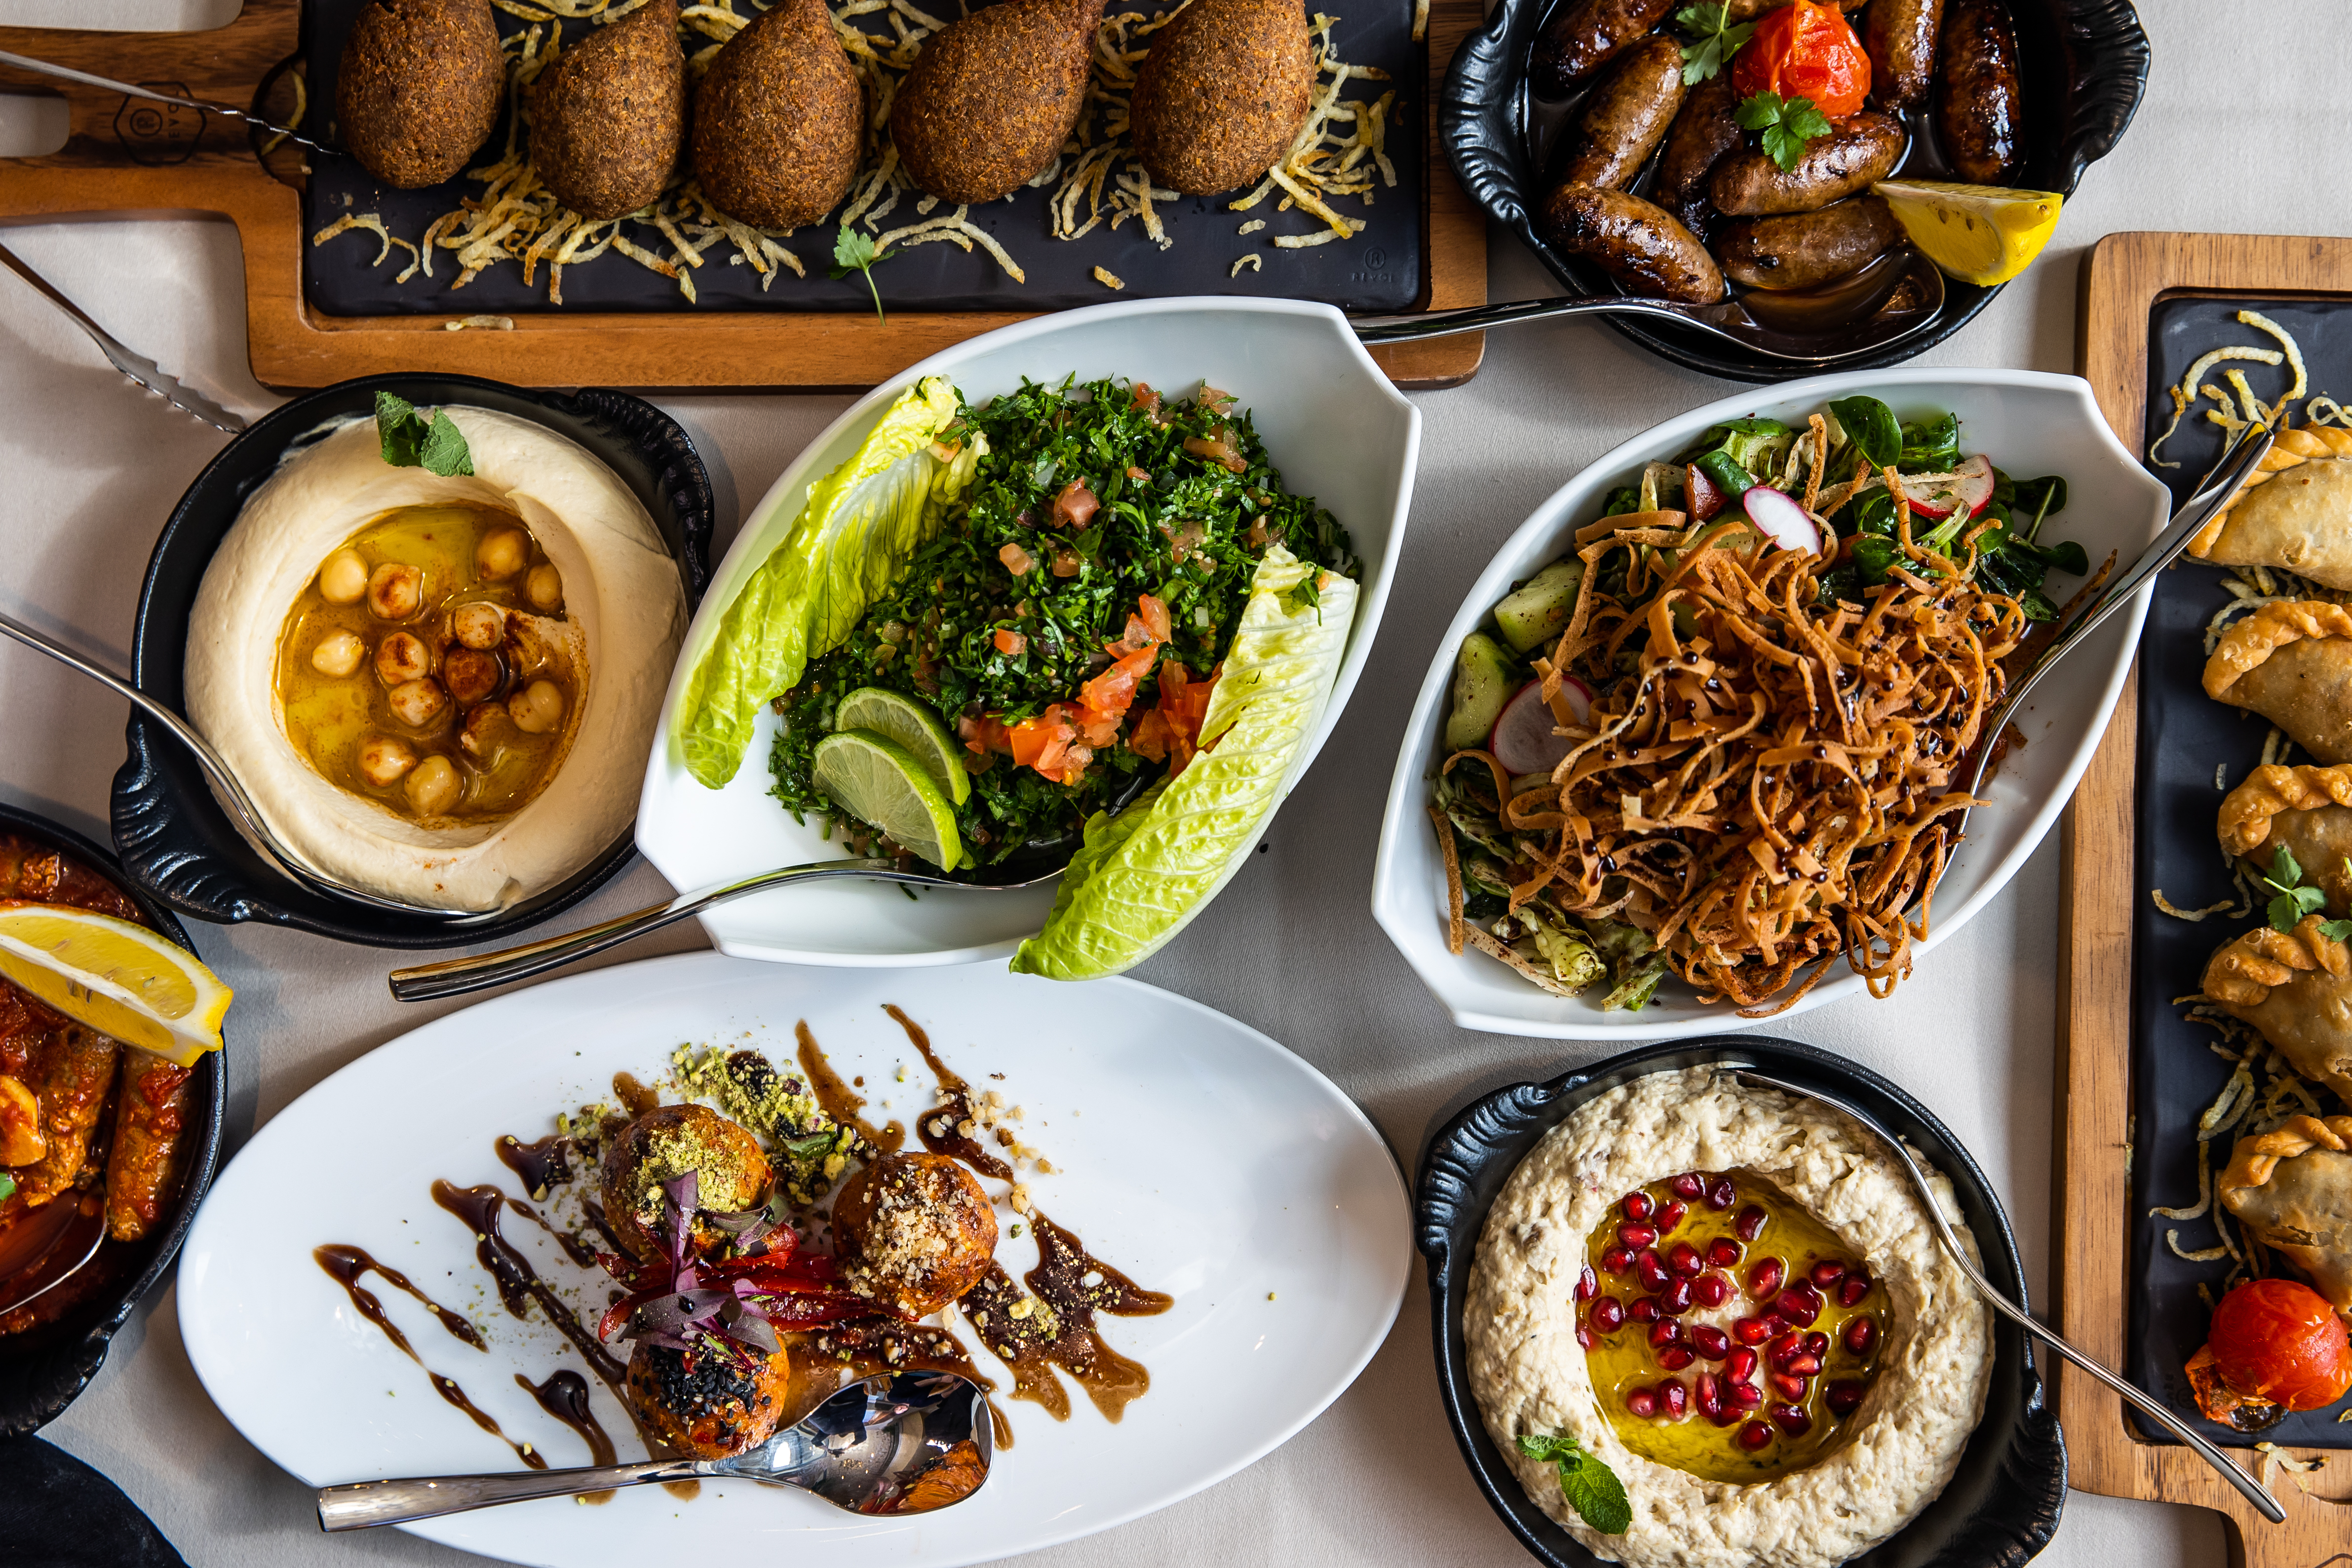 A közeli Kelet ízei – Kedvenc közel-keleti konyháink Budapesten